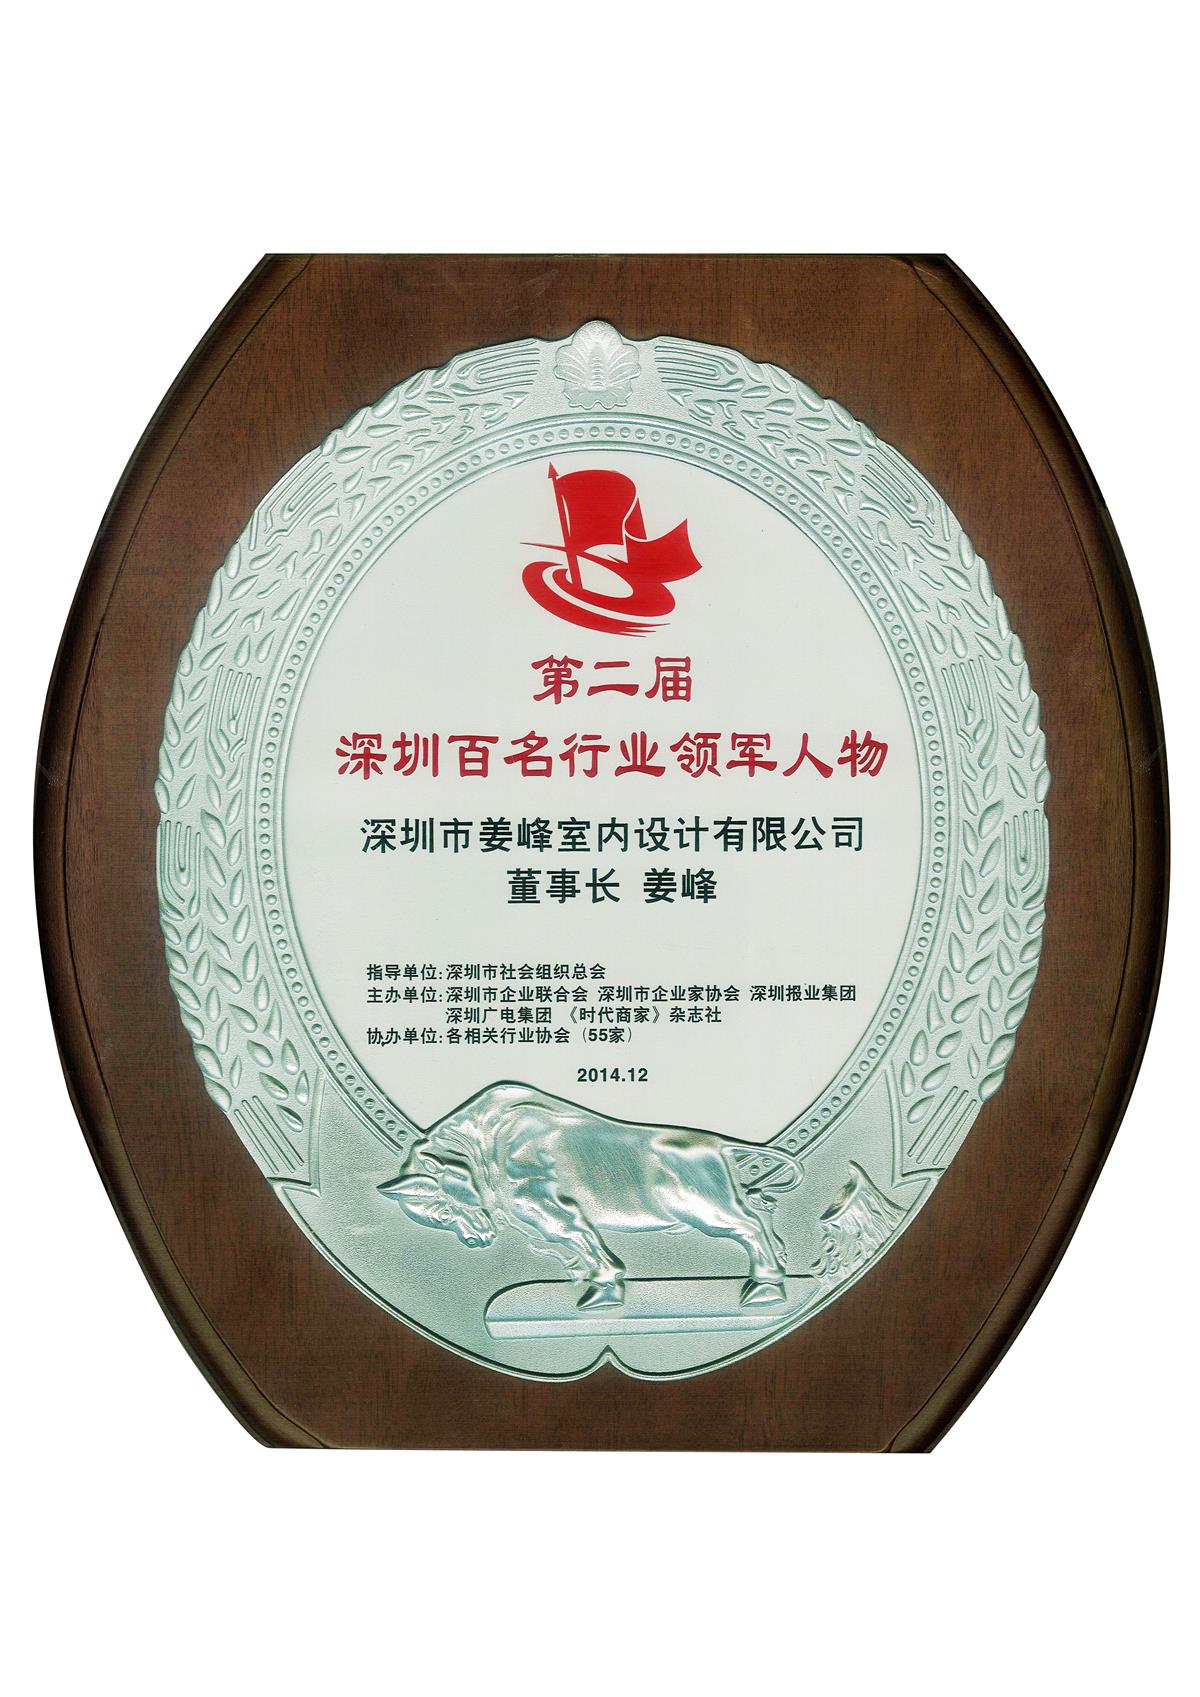 杰恩设计总设计师姜峰先生荣膺第二届“深圳百名行业领军人物”